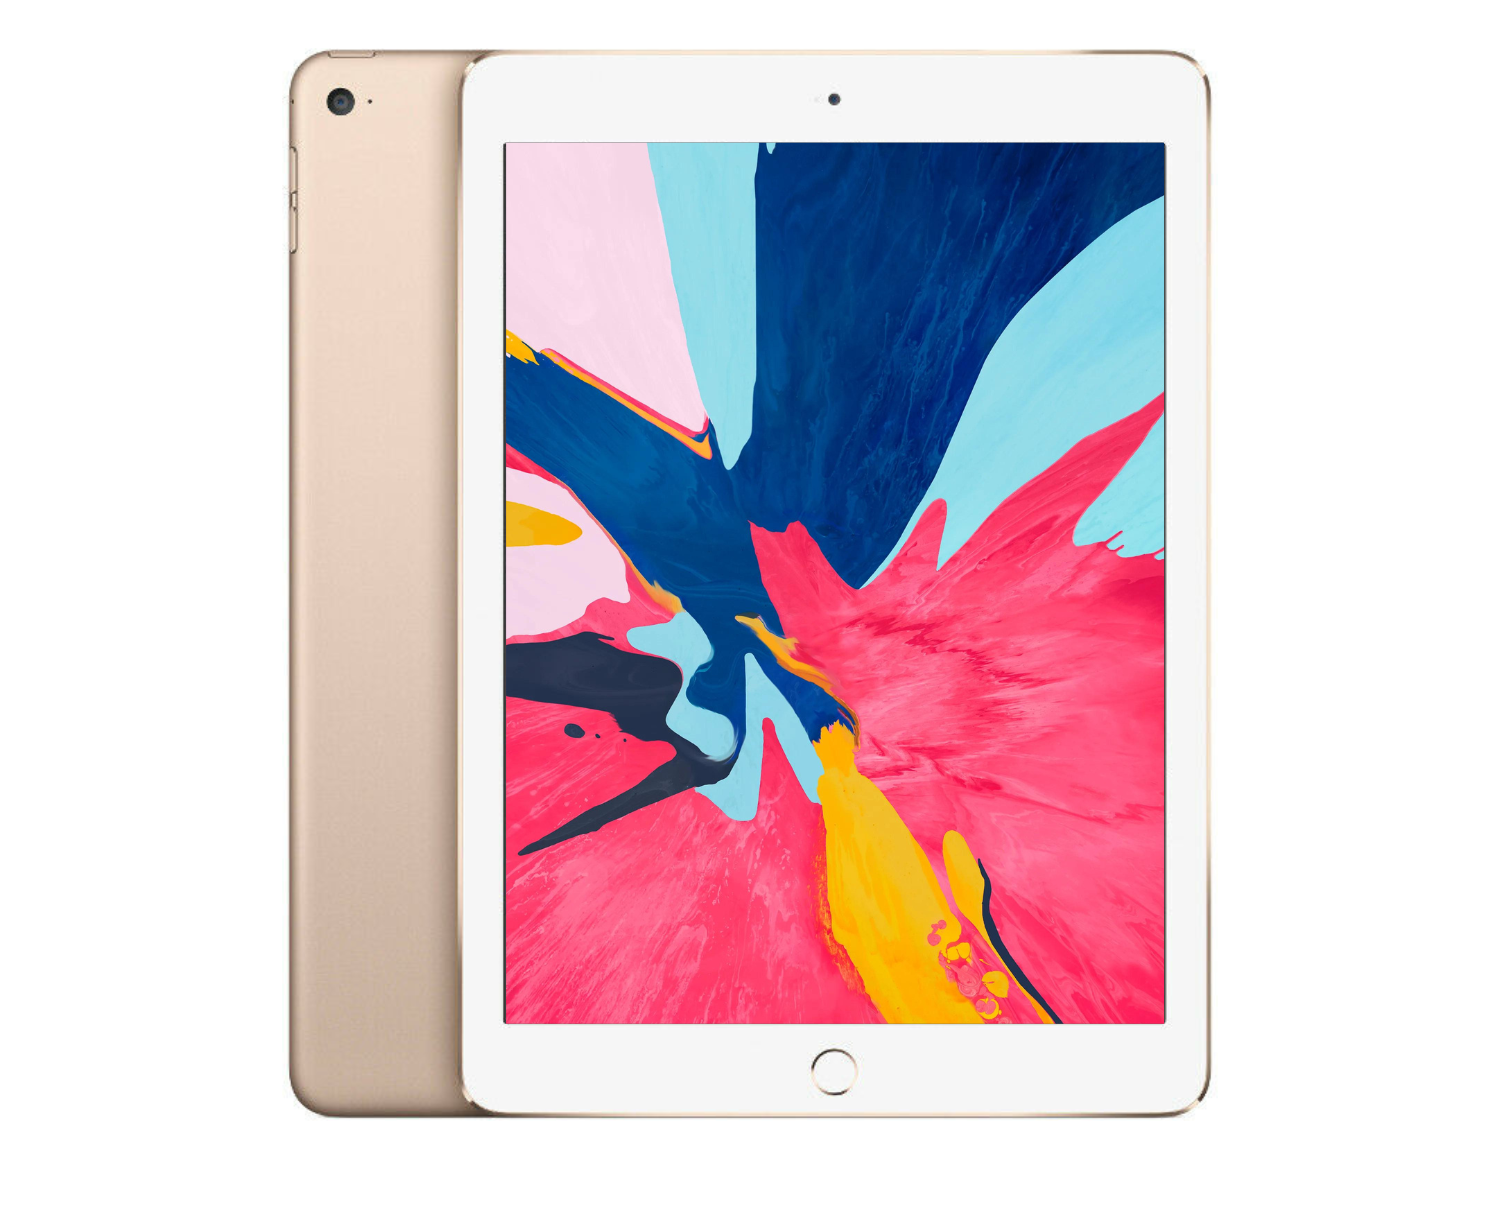 Refurbished Apple iPad Air 2 128GB WiFi/Cellular A1567 Silver